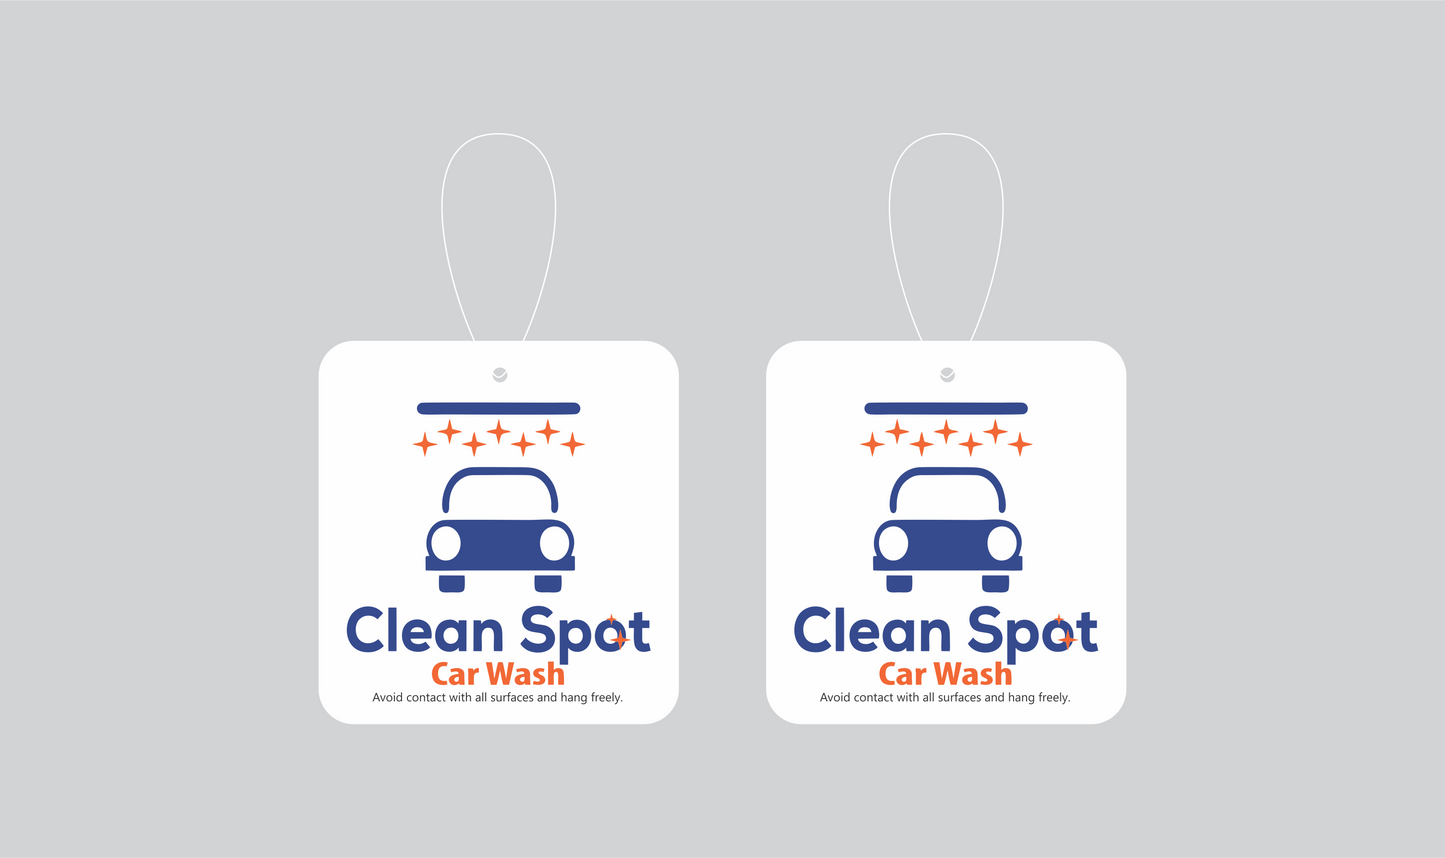 Clean Spot Car Wash - Air Fresheners